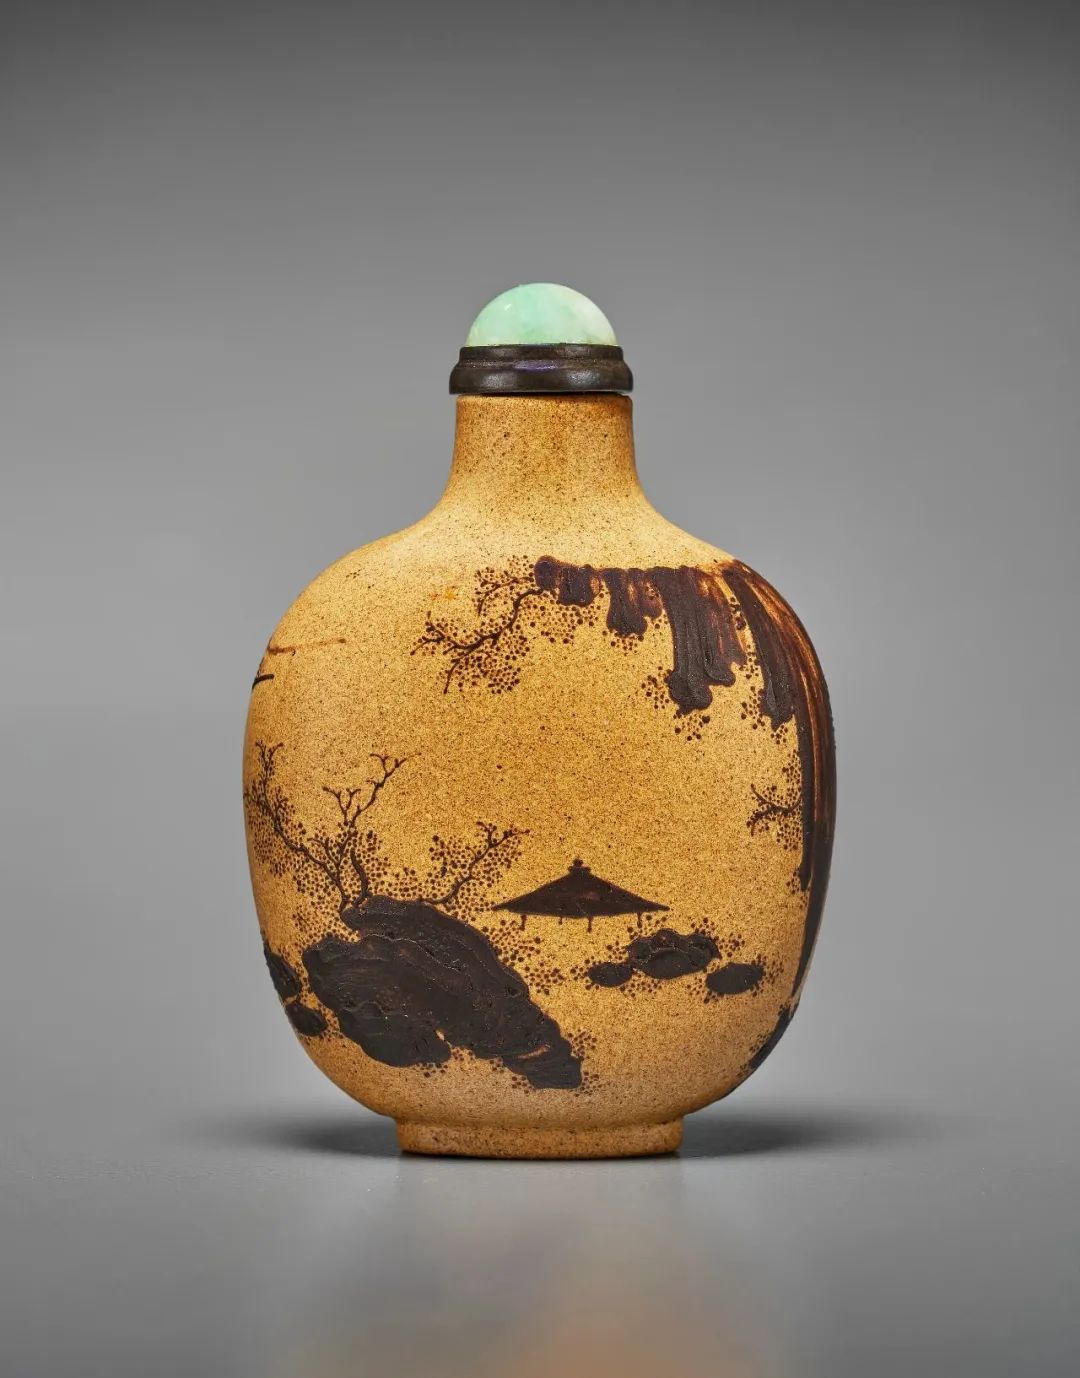 鼻煙壺『赤壁圖』『靜聽松風圖』手絵精品中國傳統工芸美術作品